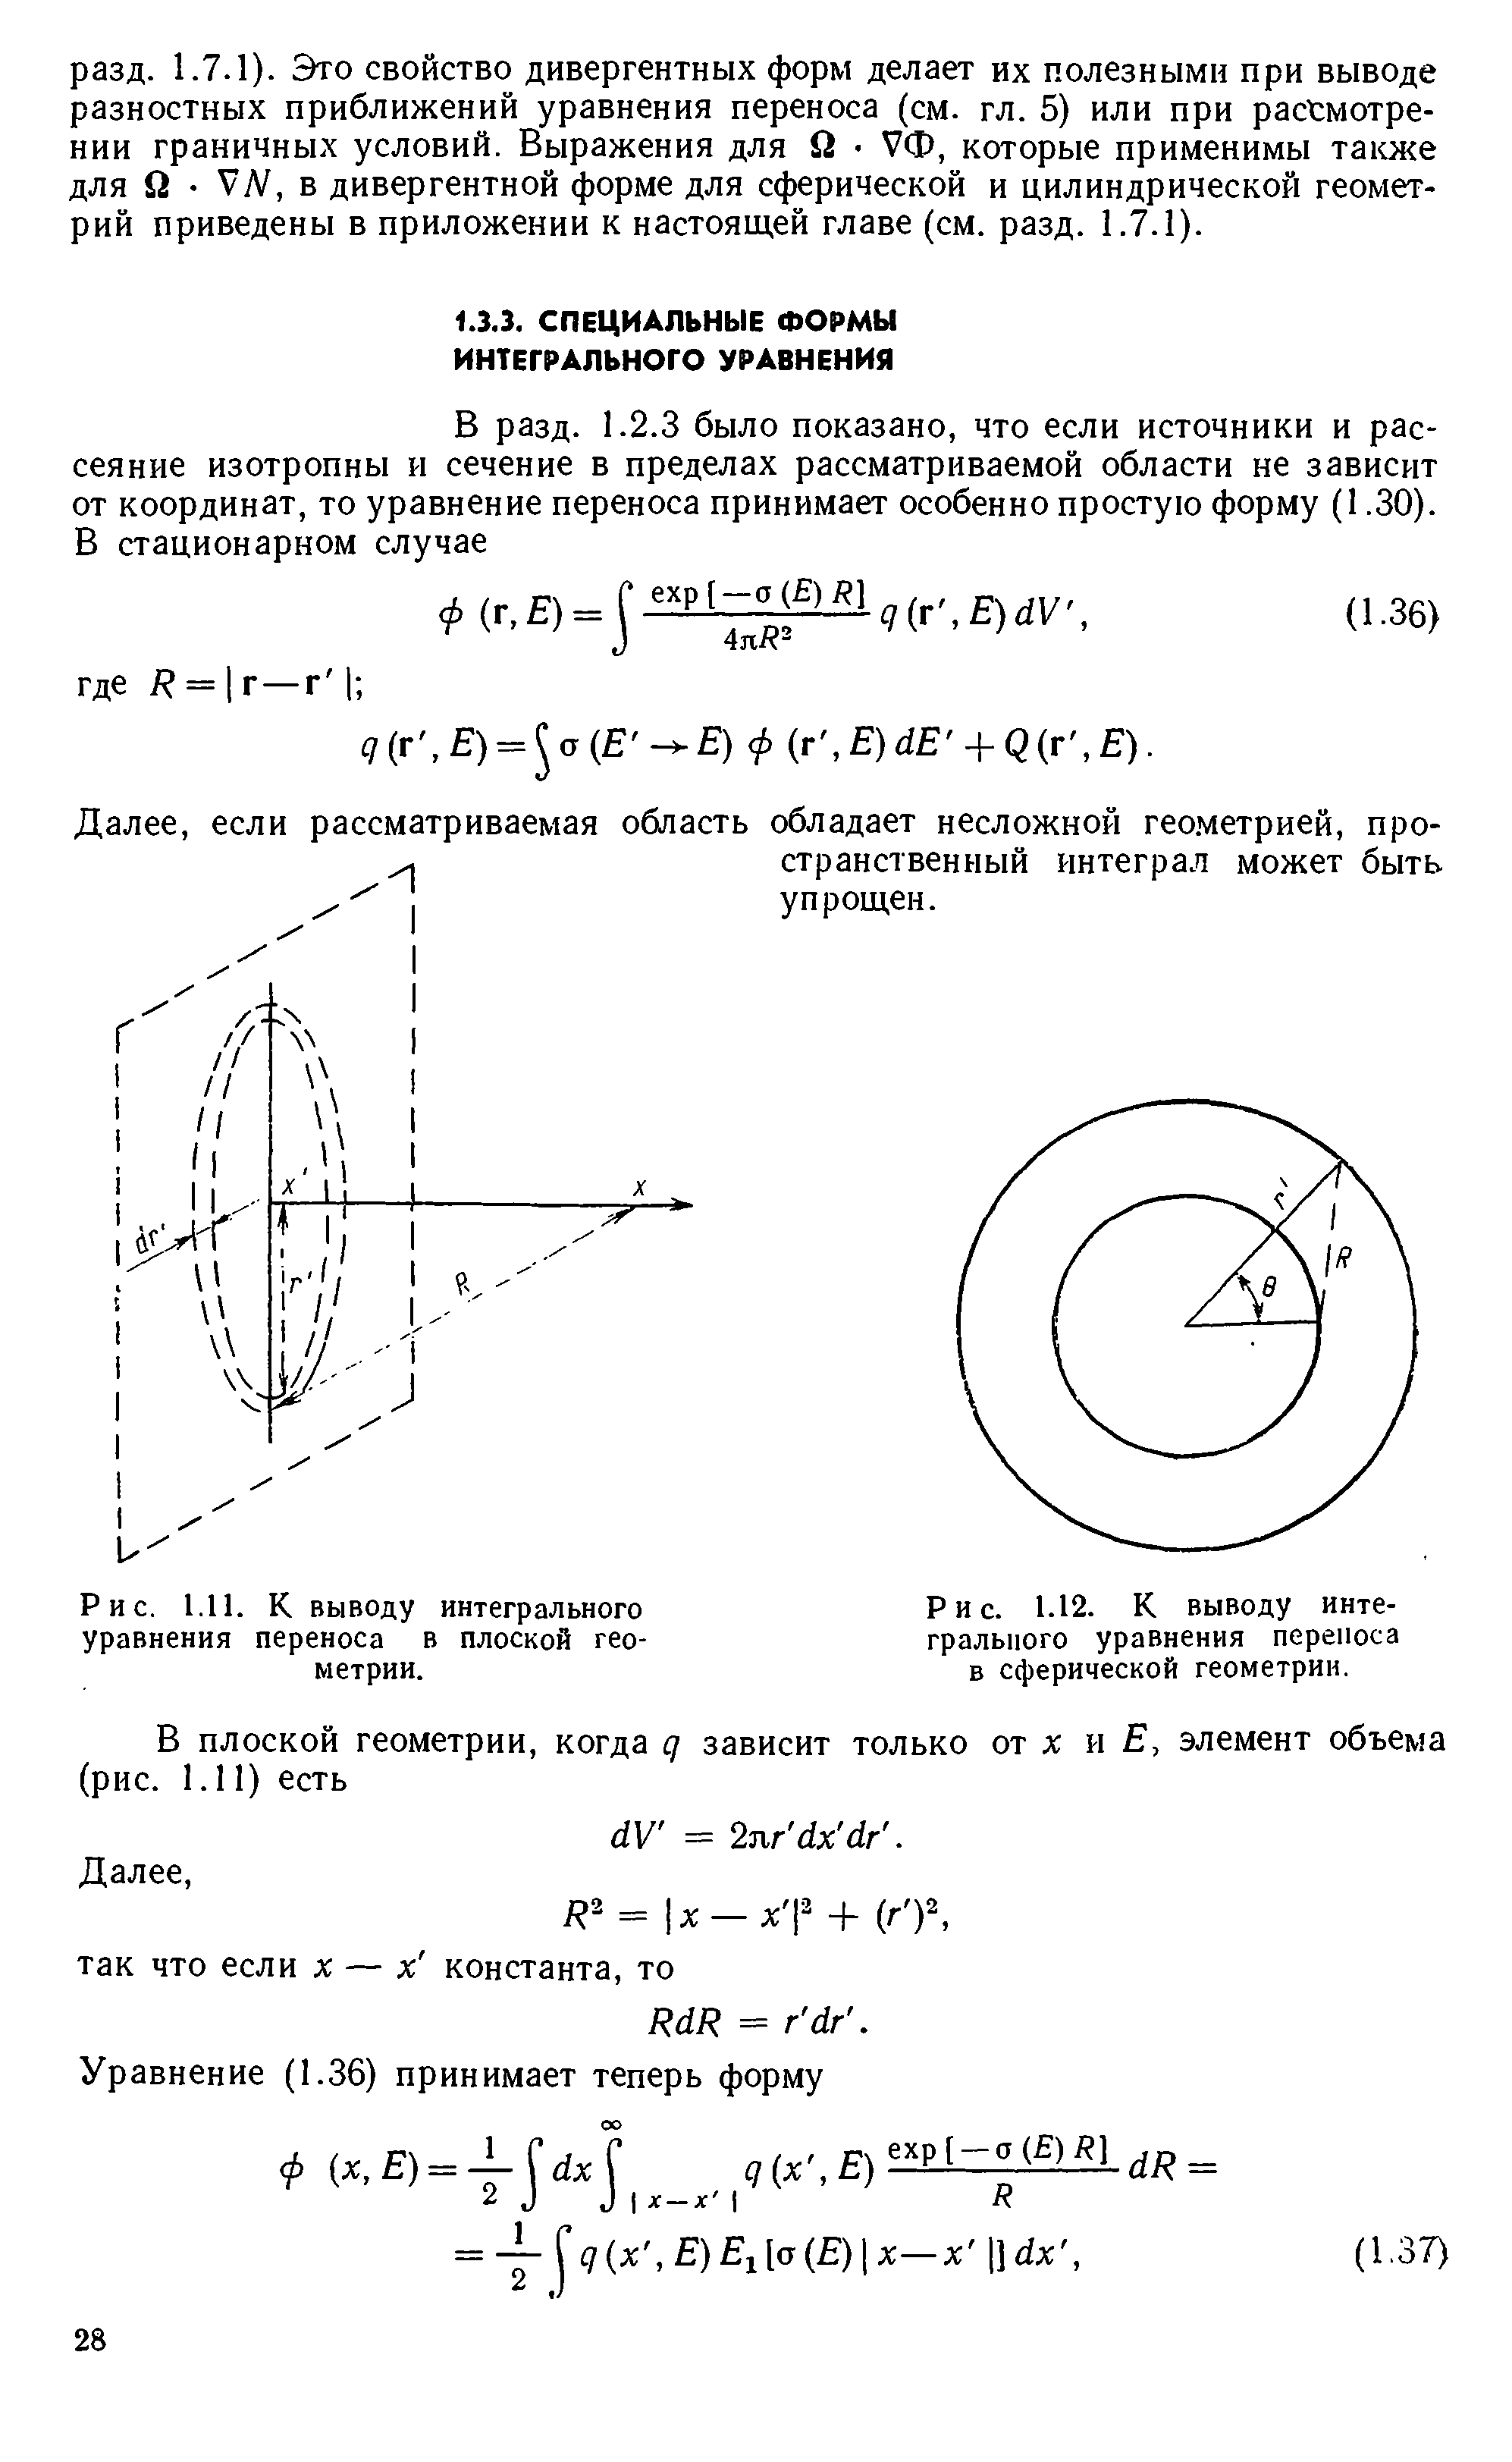 Рис. 1.12. К выводу интегрального уравнения переноса в сферической геометрии.
